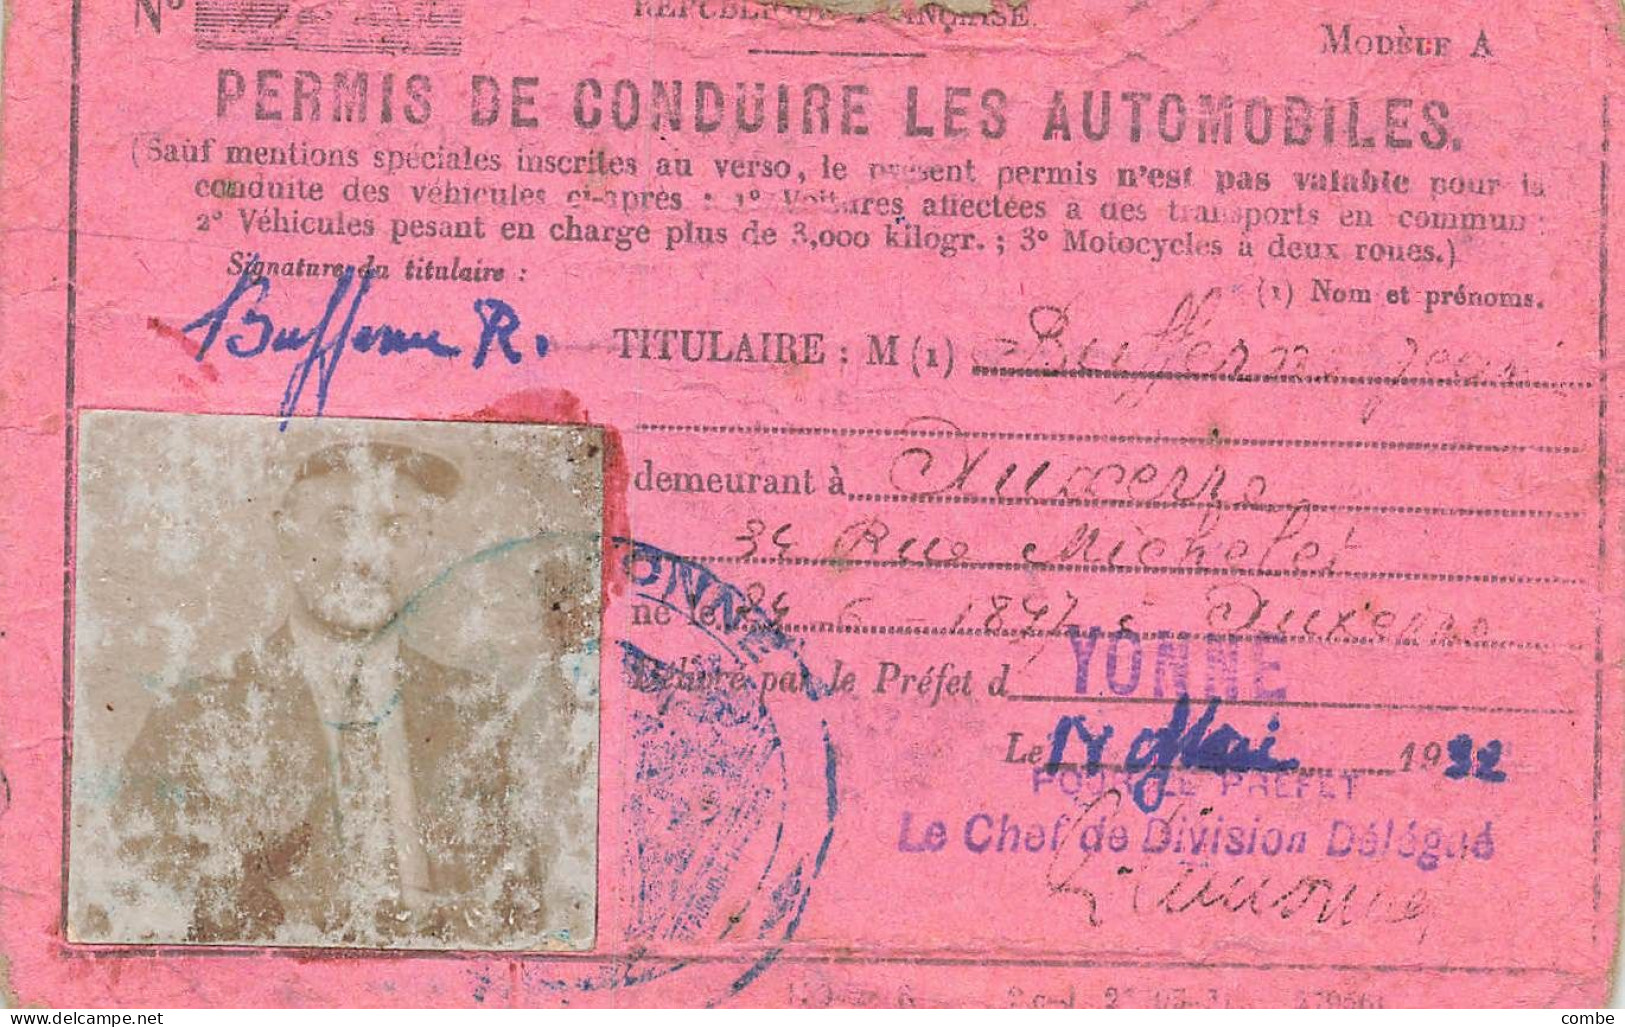 PERMIS DE CONDUIRE LES AUTOMOBILES.  YONNE. 1932 - Historische Dokumente